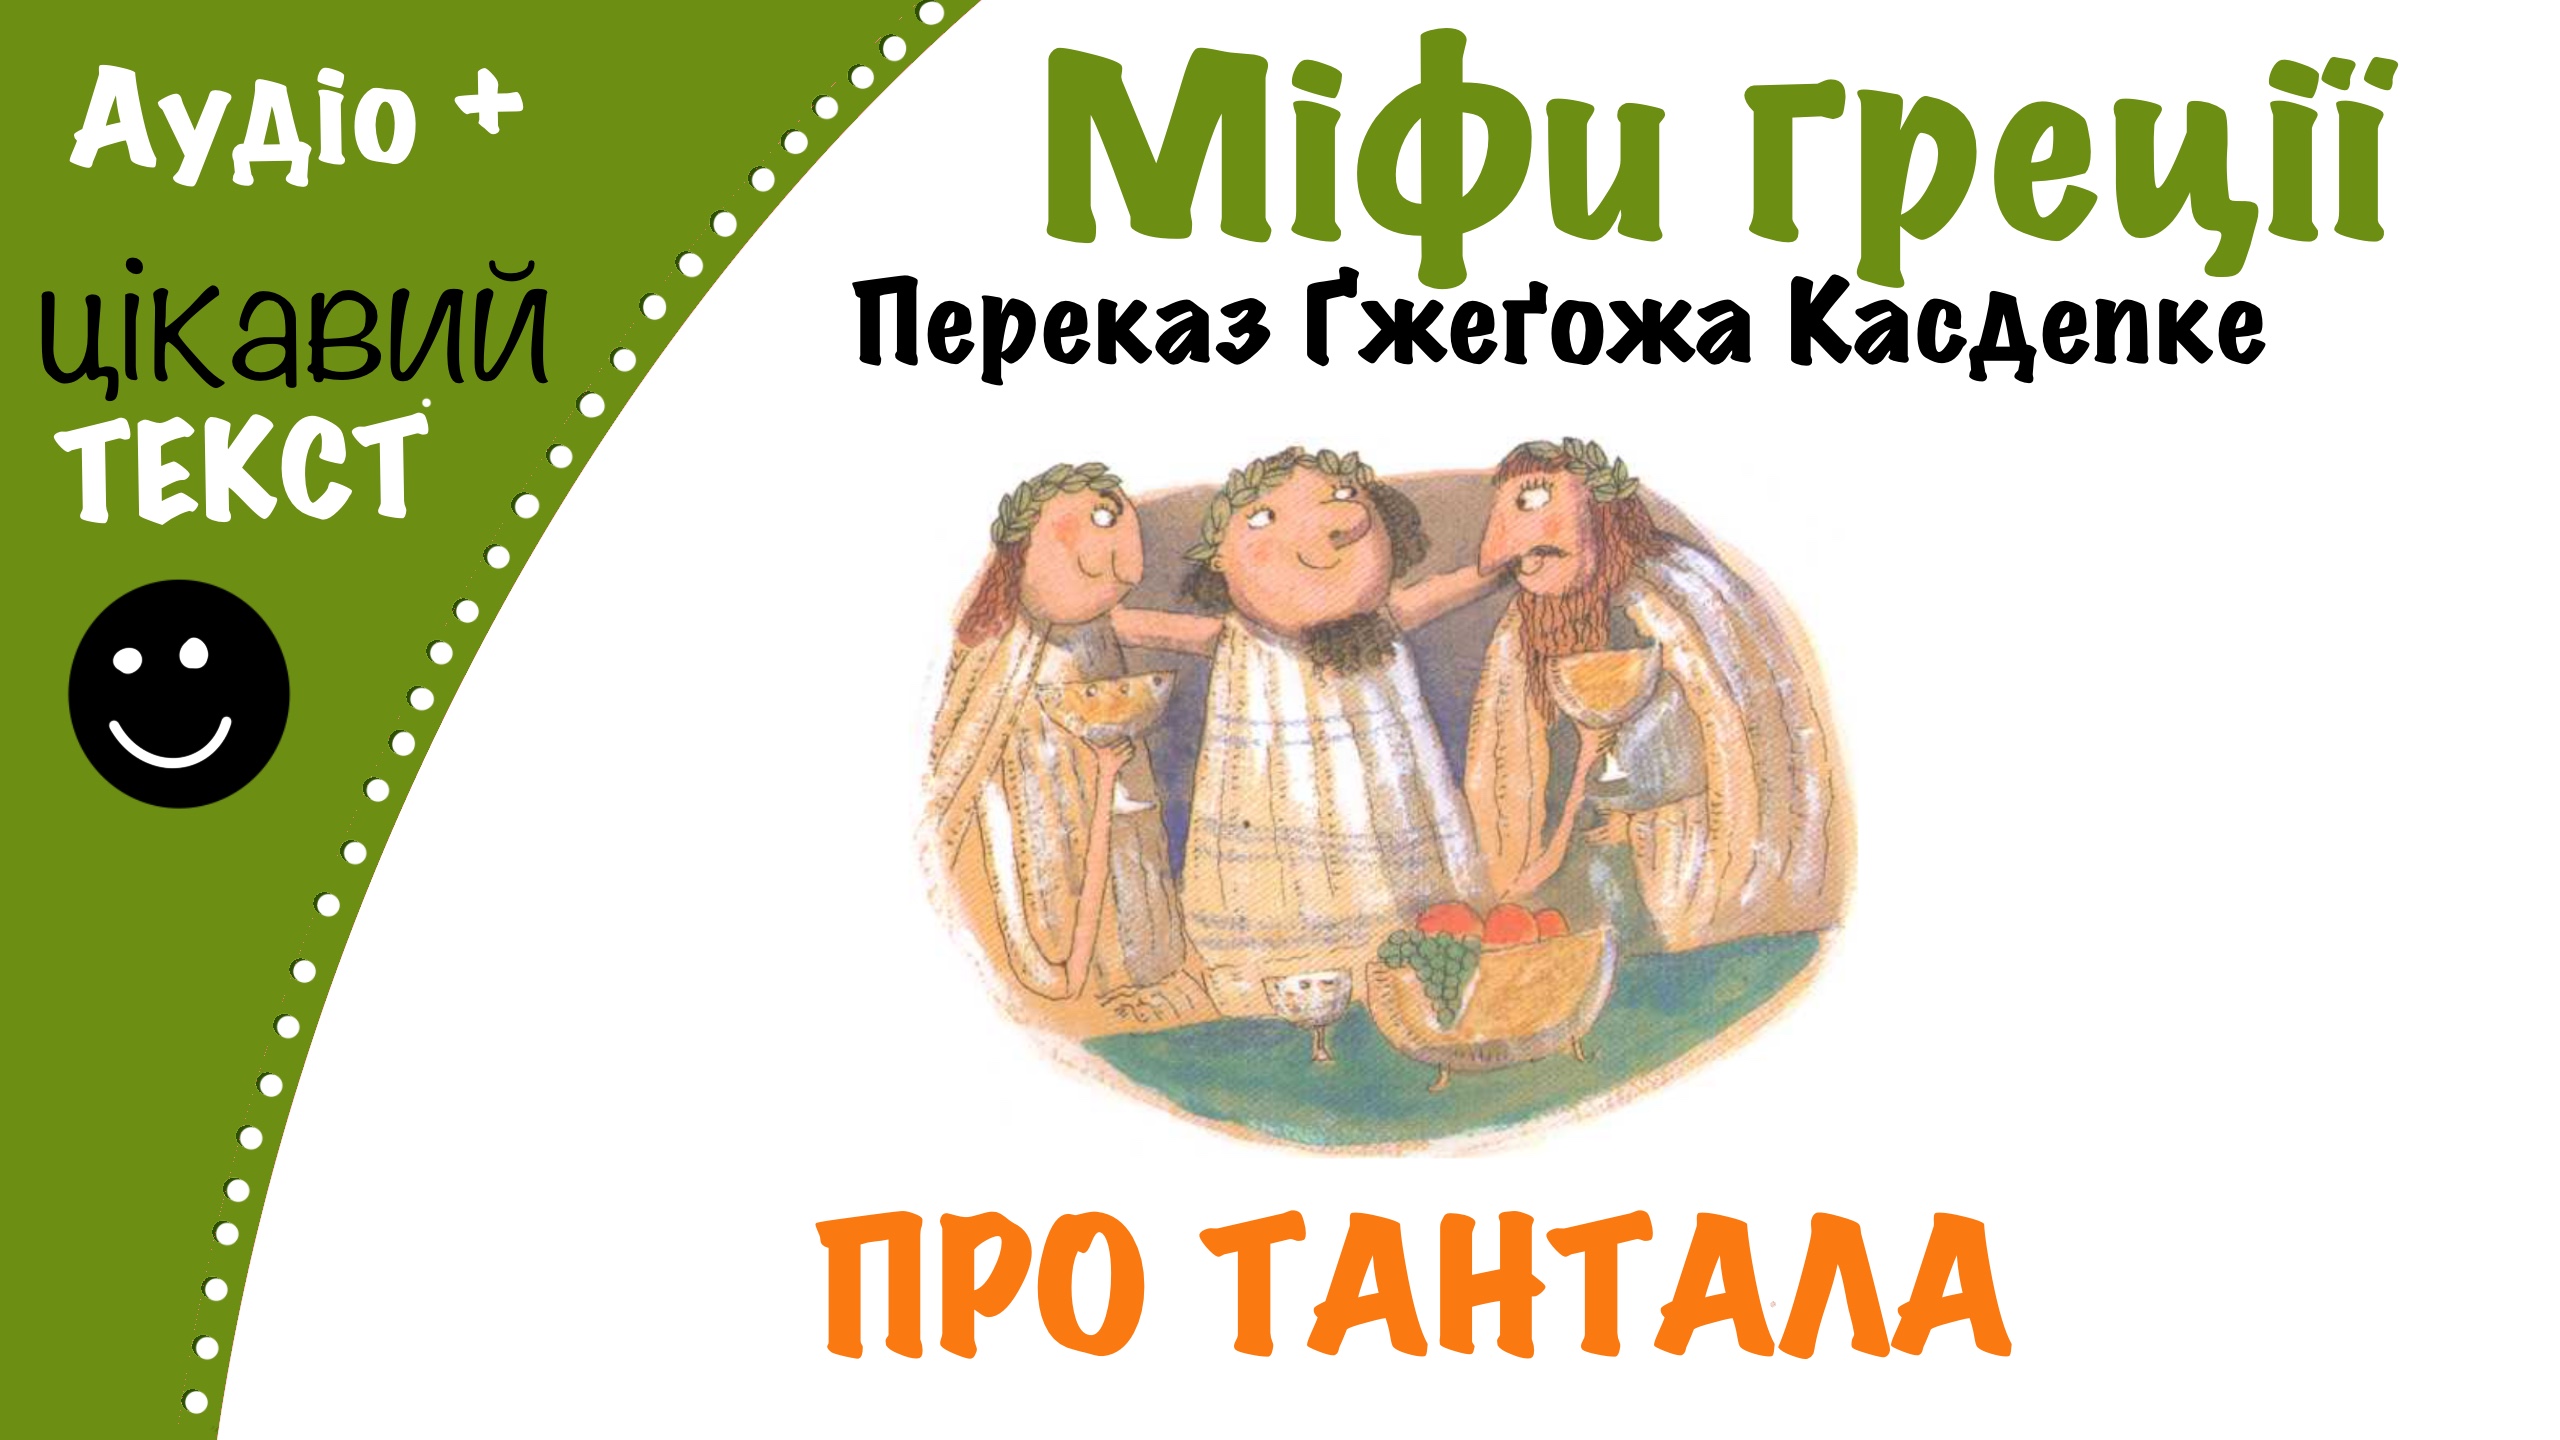 Перейти до: Грецький міф про Тантала. Переказ Ґжеґожа Касдепке